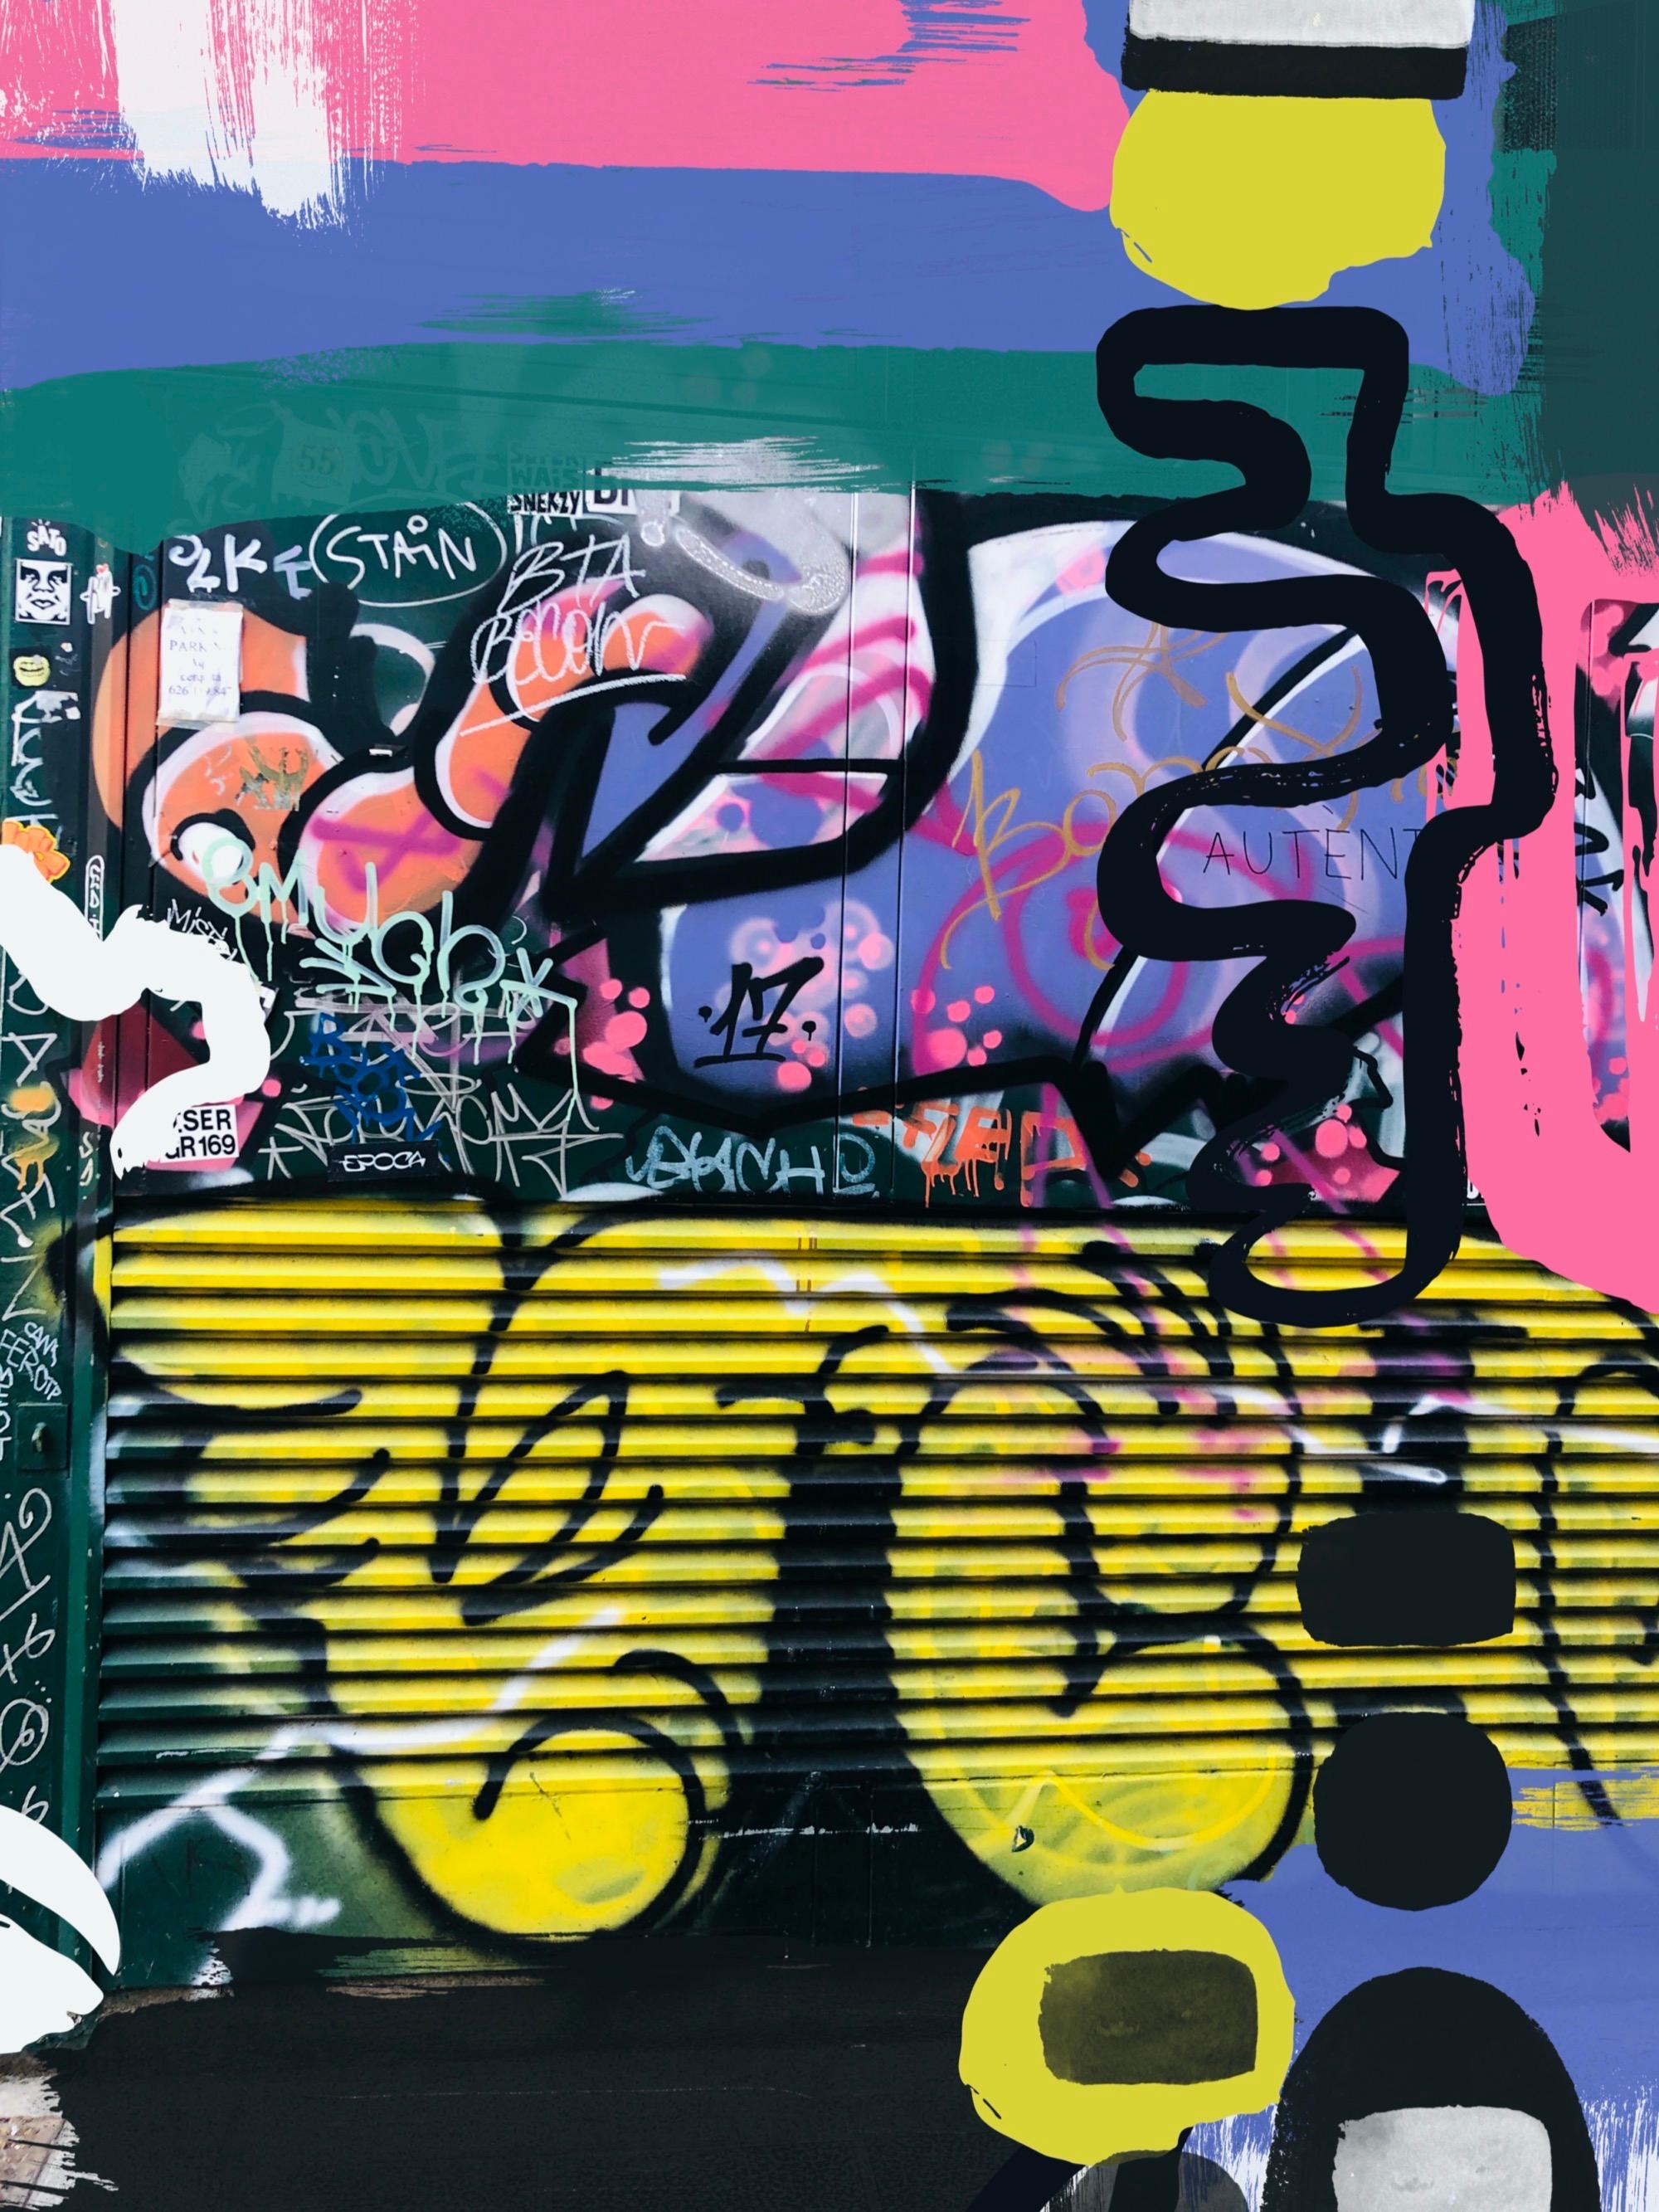 Original Graffiti Street Art auf Leinwand, Mixed Medium Art, 45 x 60"" Eine Ungewissheit